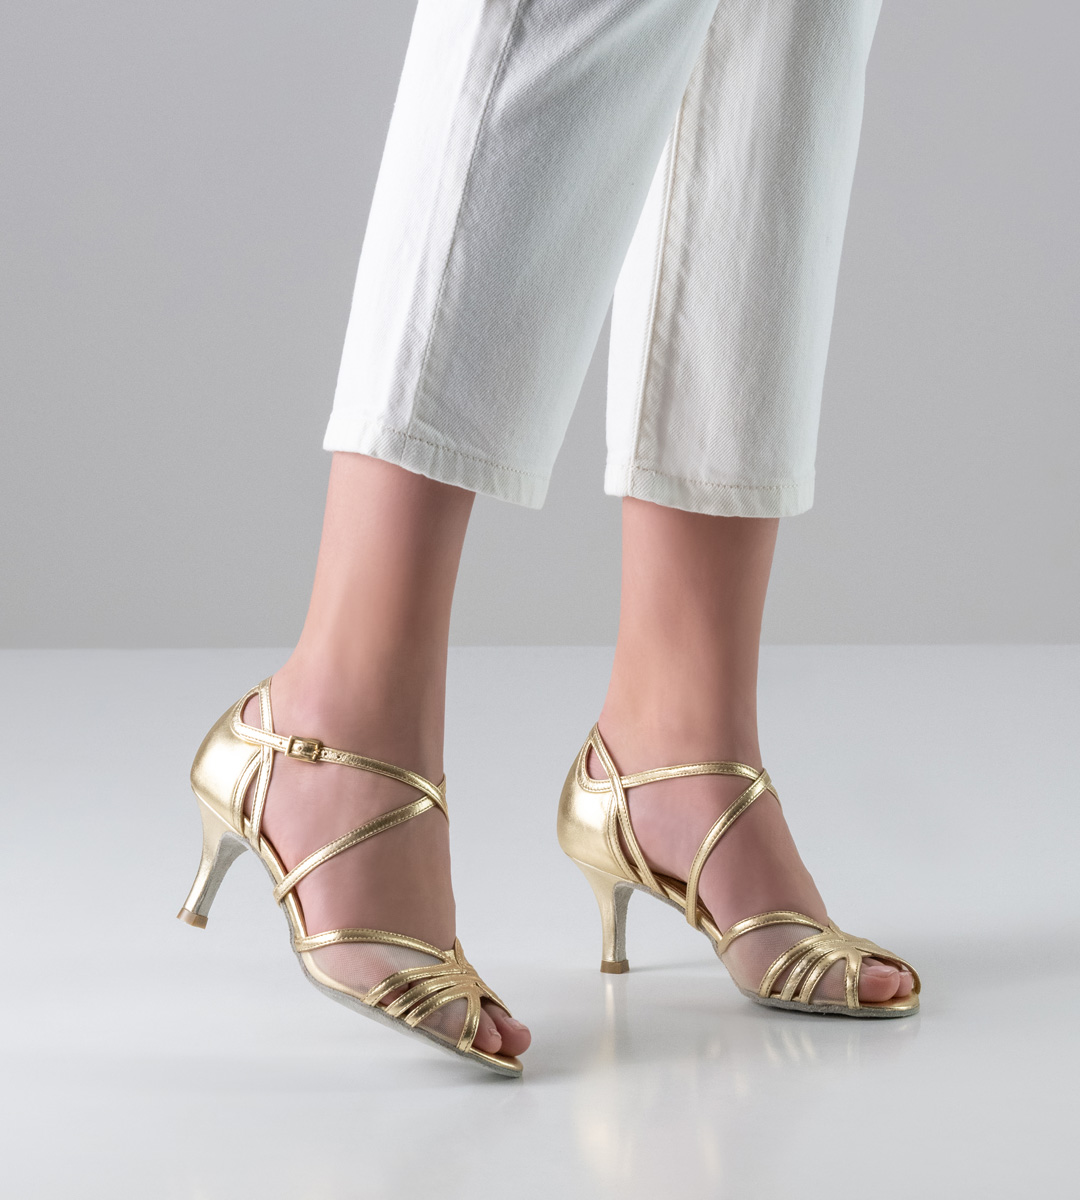 pantalon blanc en combinaison avec des chaussures de danse pour femmes Nueva Epoca de couleur platine